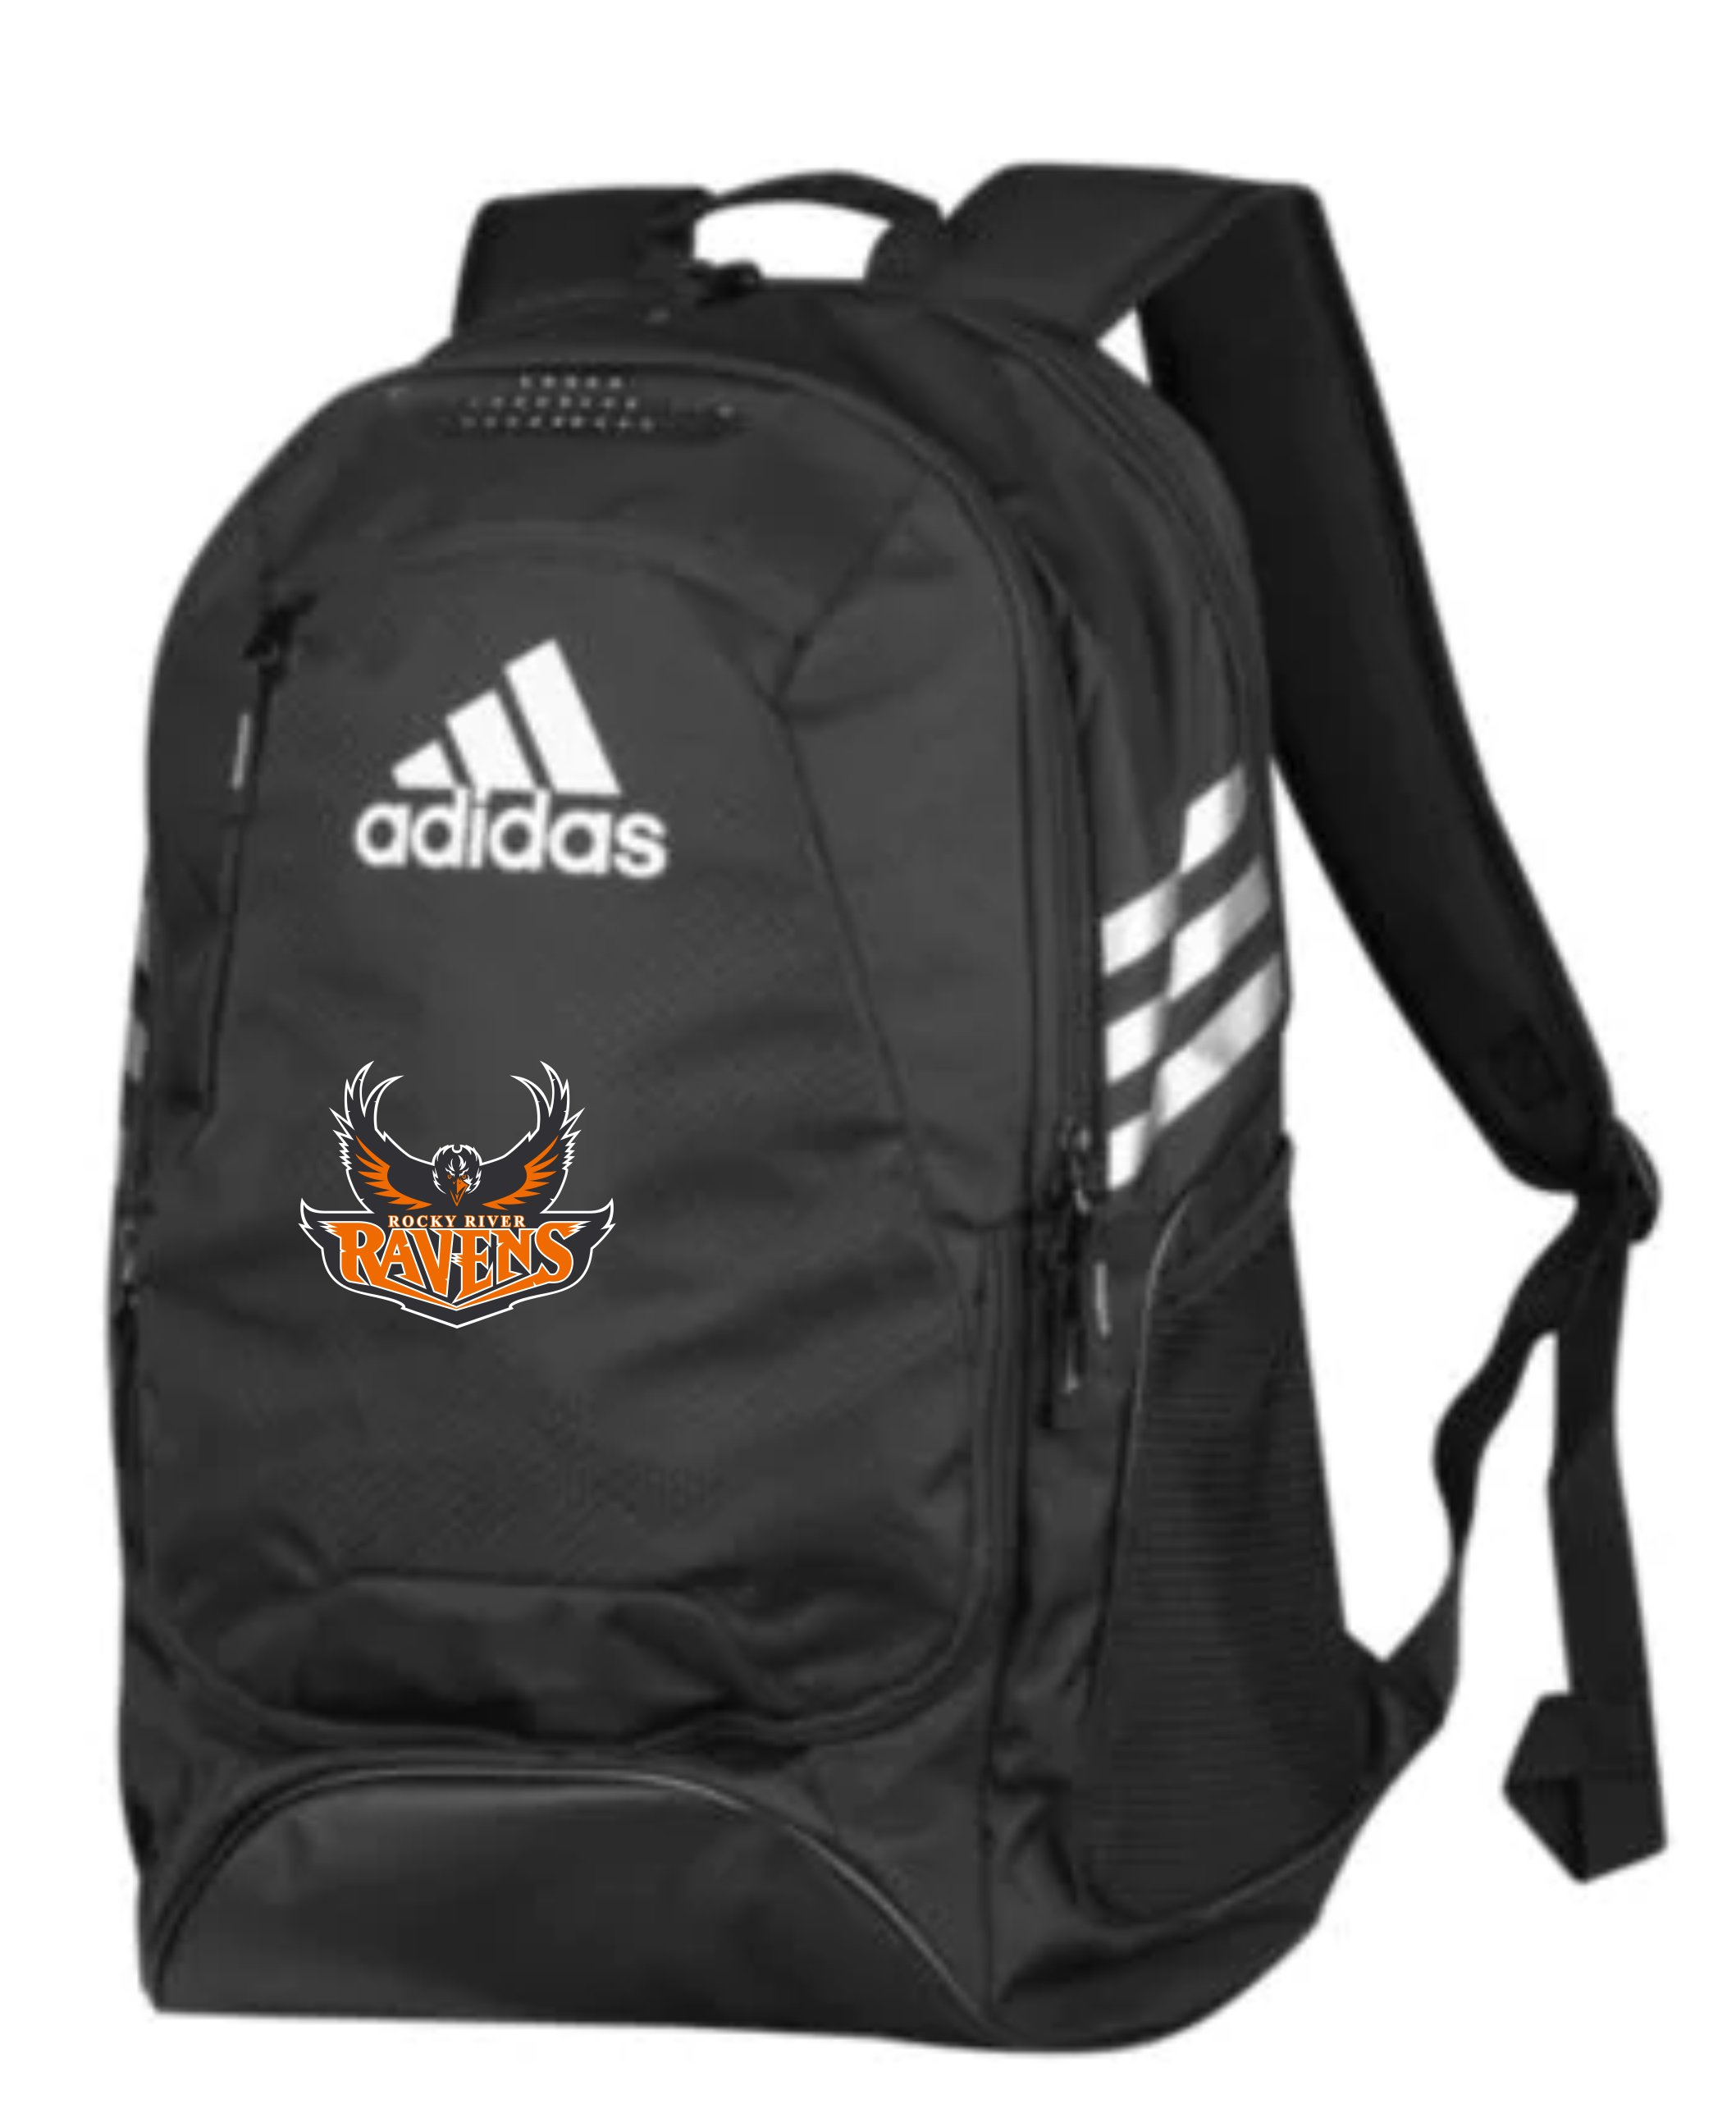 adidas team backpacks